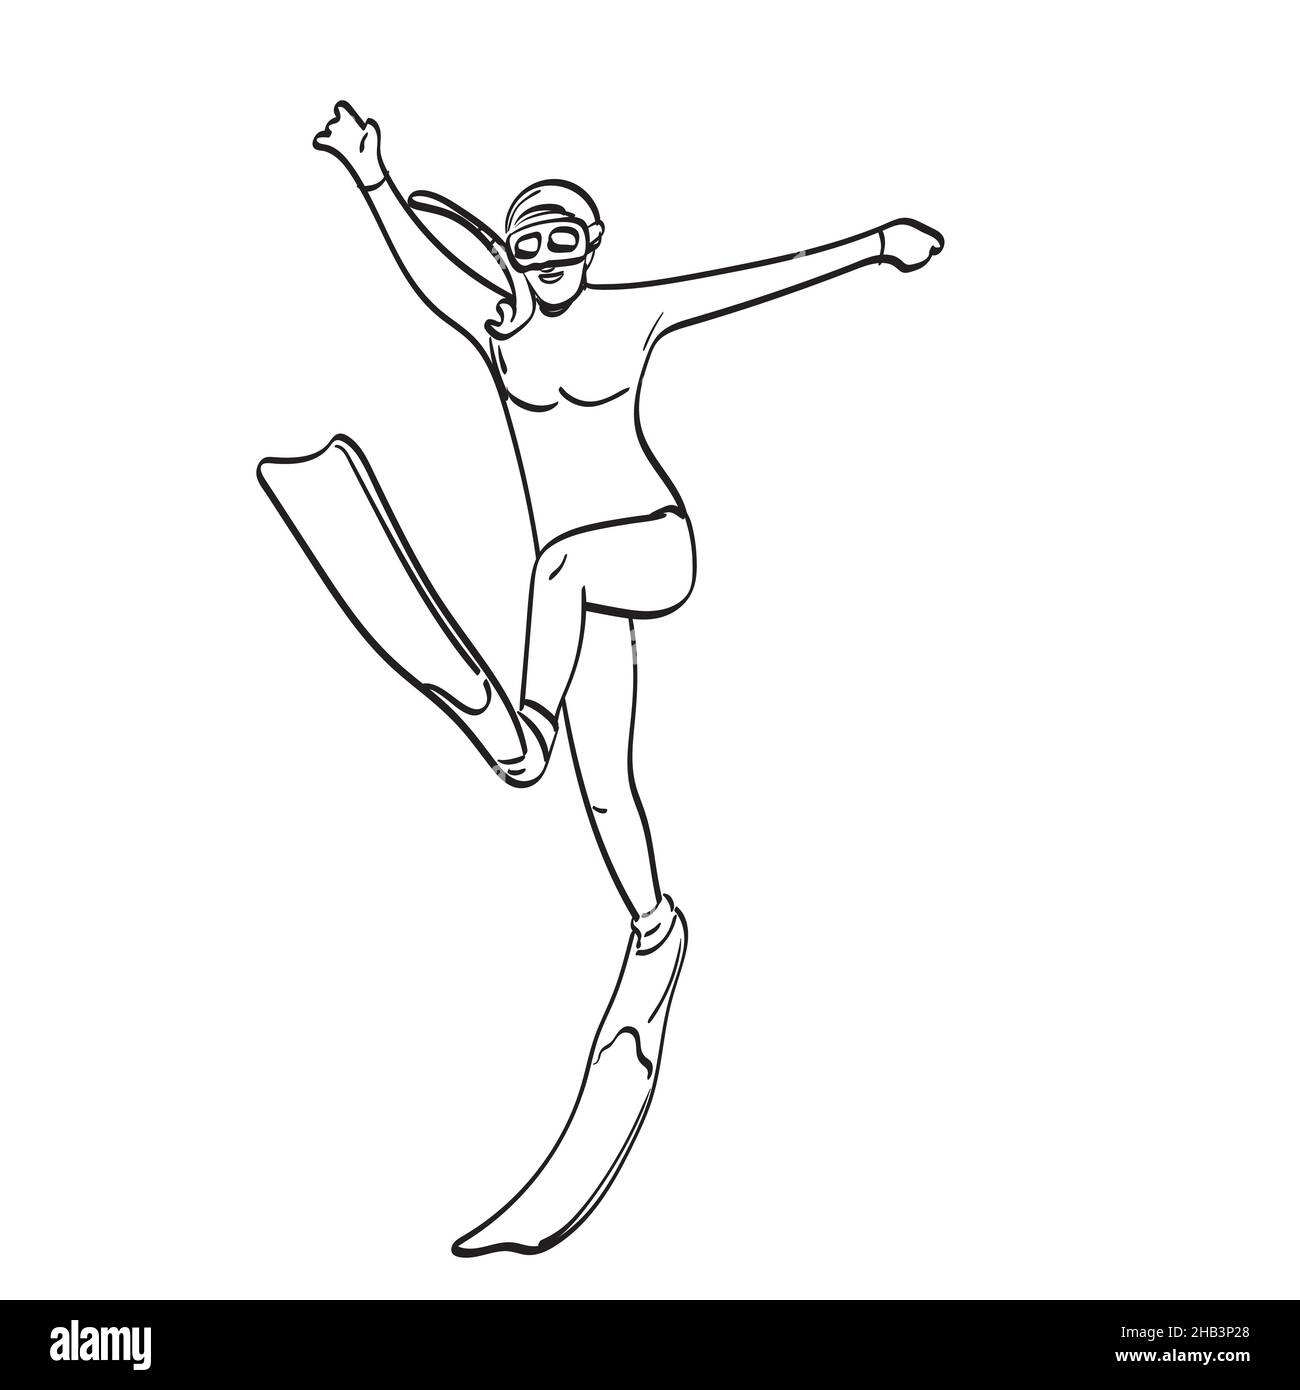 Frau im Badeanzug springen mit Flossen Illustration Vektor Hand gezeichnet isoliert auf weißem Hintergrund Linie Kunst Stock Vektor